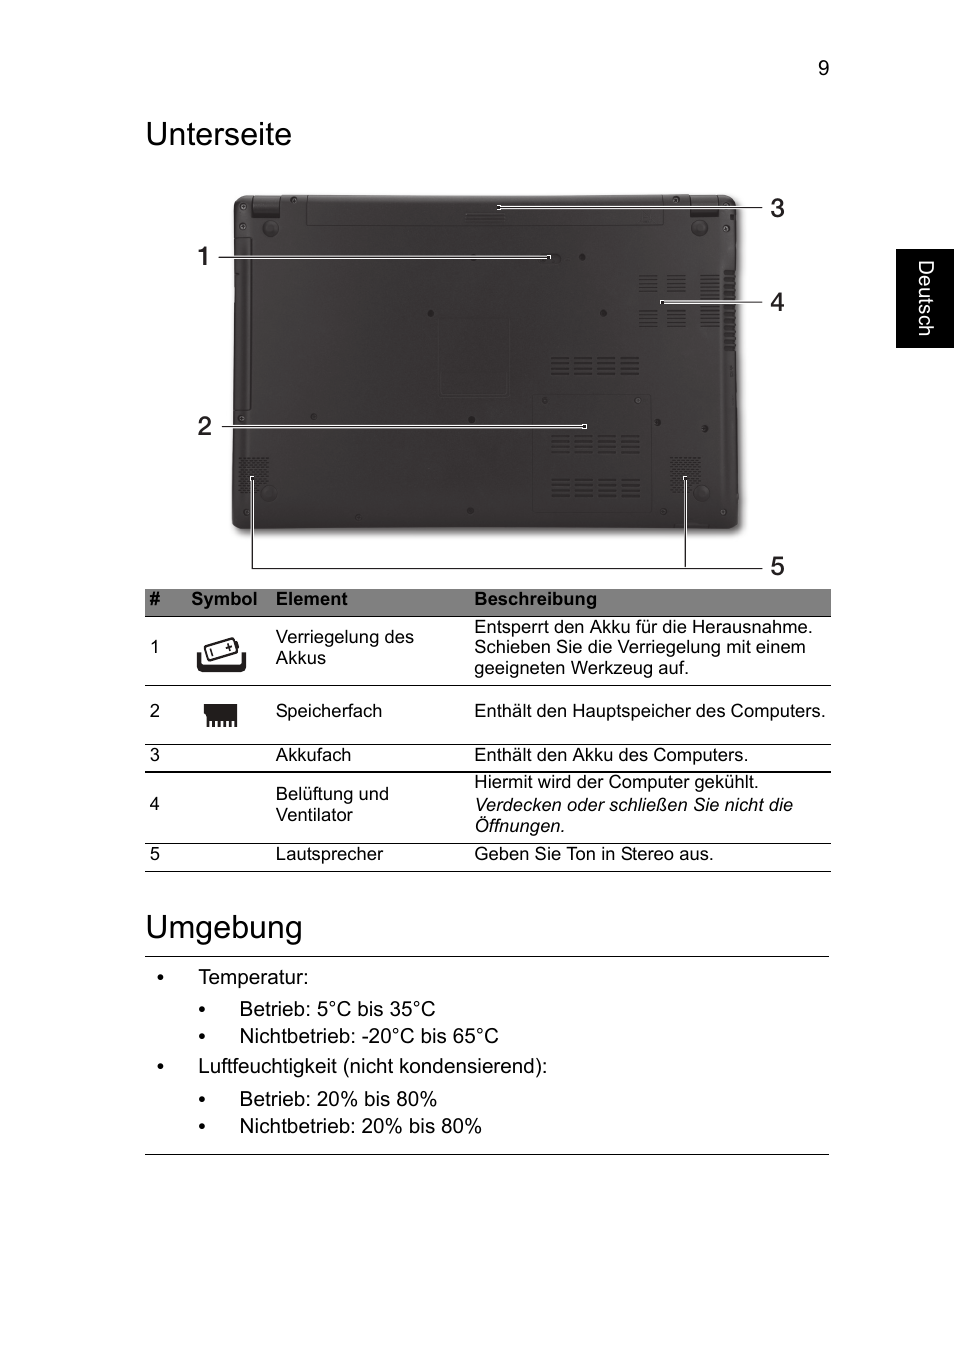 Unterseite, Umgebung, Unterseite umgebung | Acer Aspire V5-571G User Manual  | Page 31 / 306 | Original mode